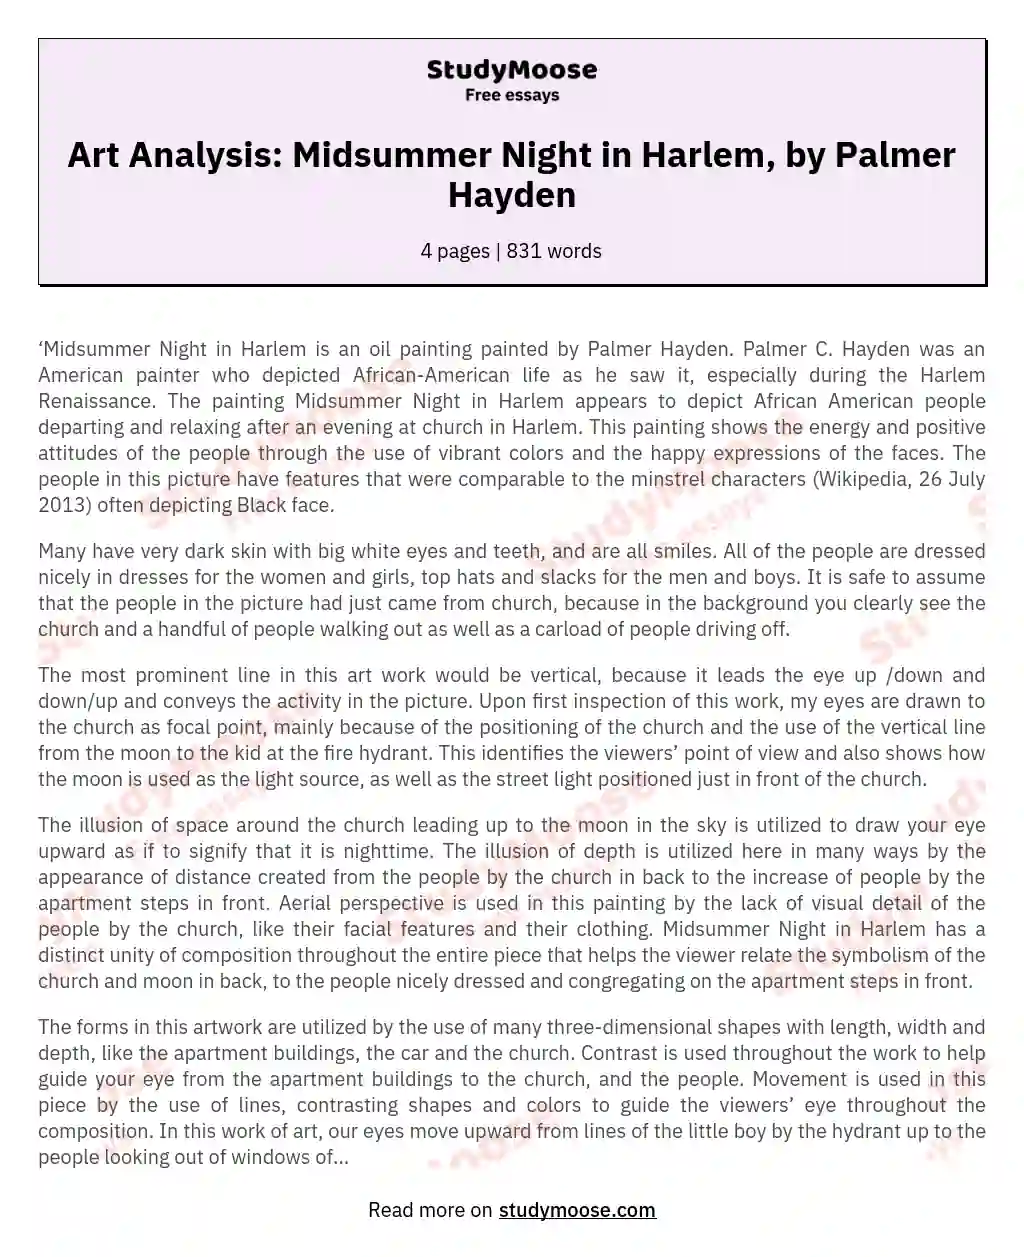 Art Analysis: Midsummer Night in Harlem, by Palmer Hayden